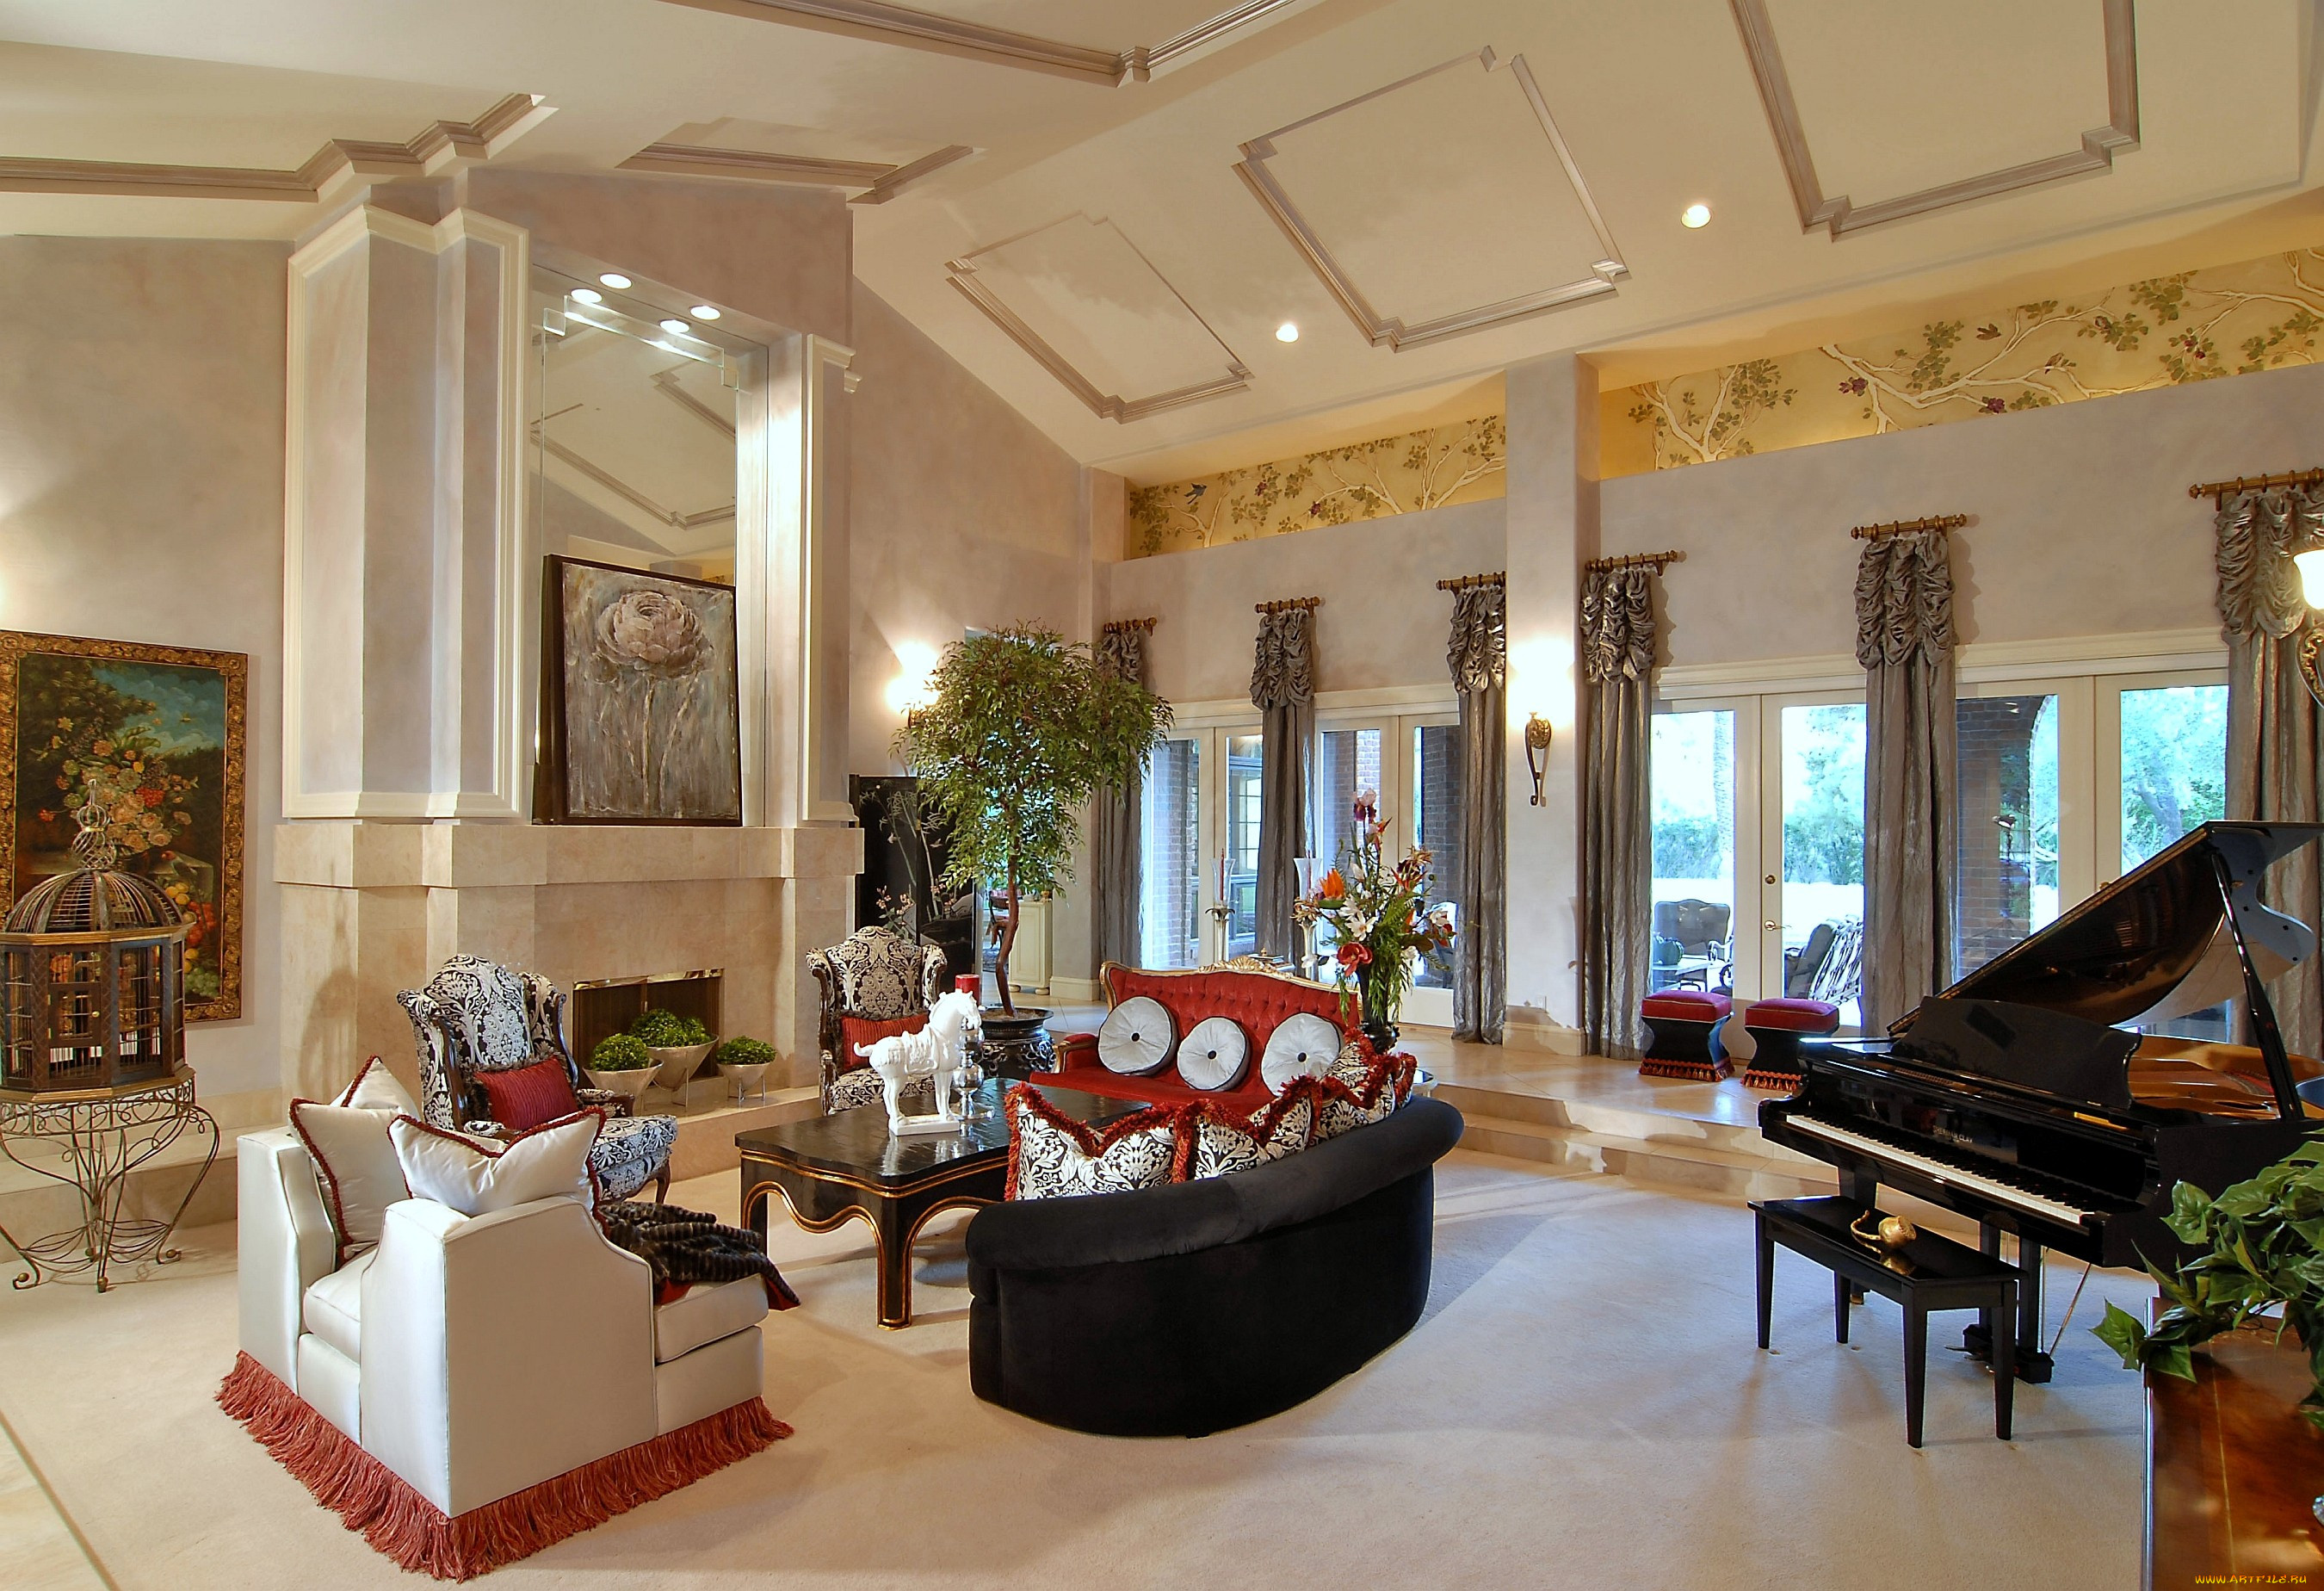 Hall living room. Гостиная с роялем. Роскошная гостиная в особняке. Рояль в интерьере гостиной. Интерьер богатых домов.